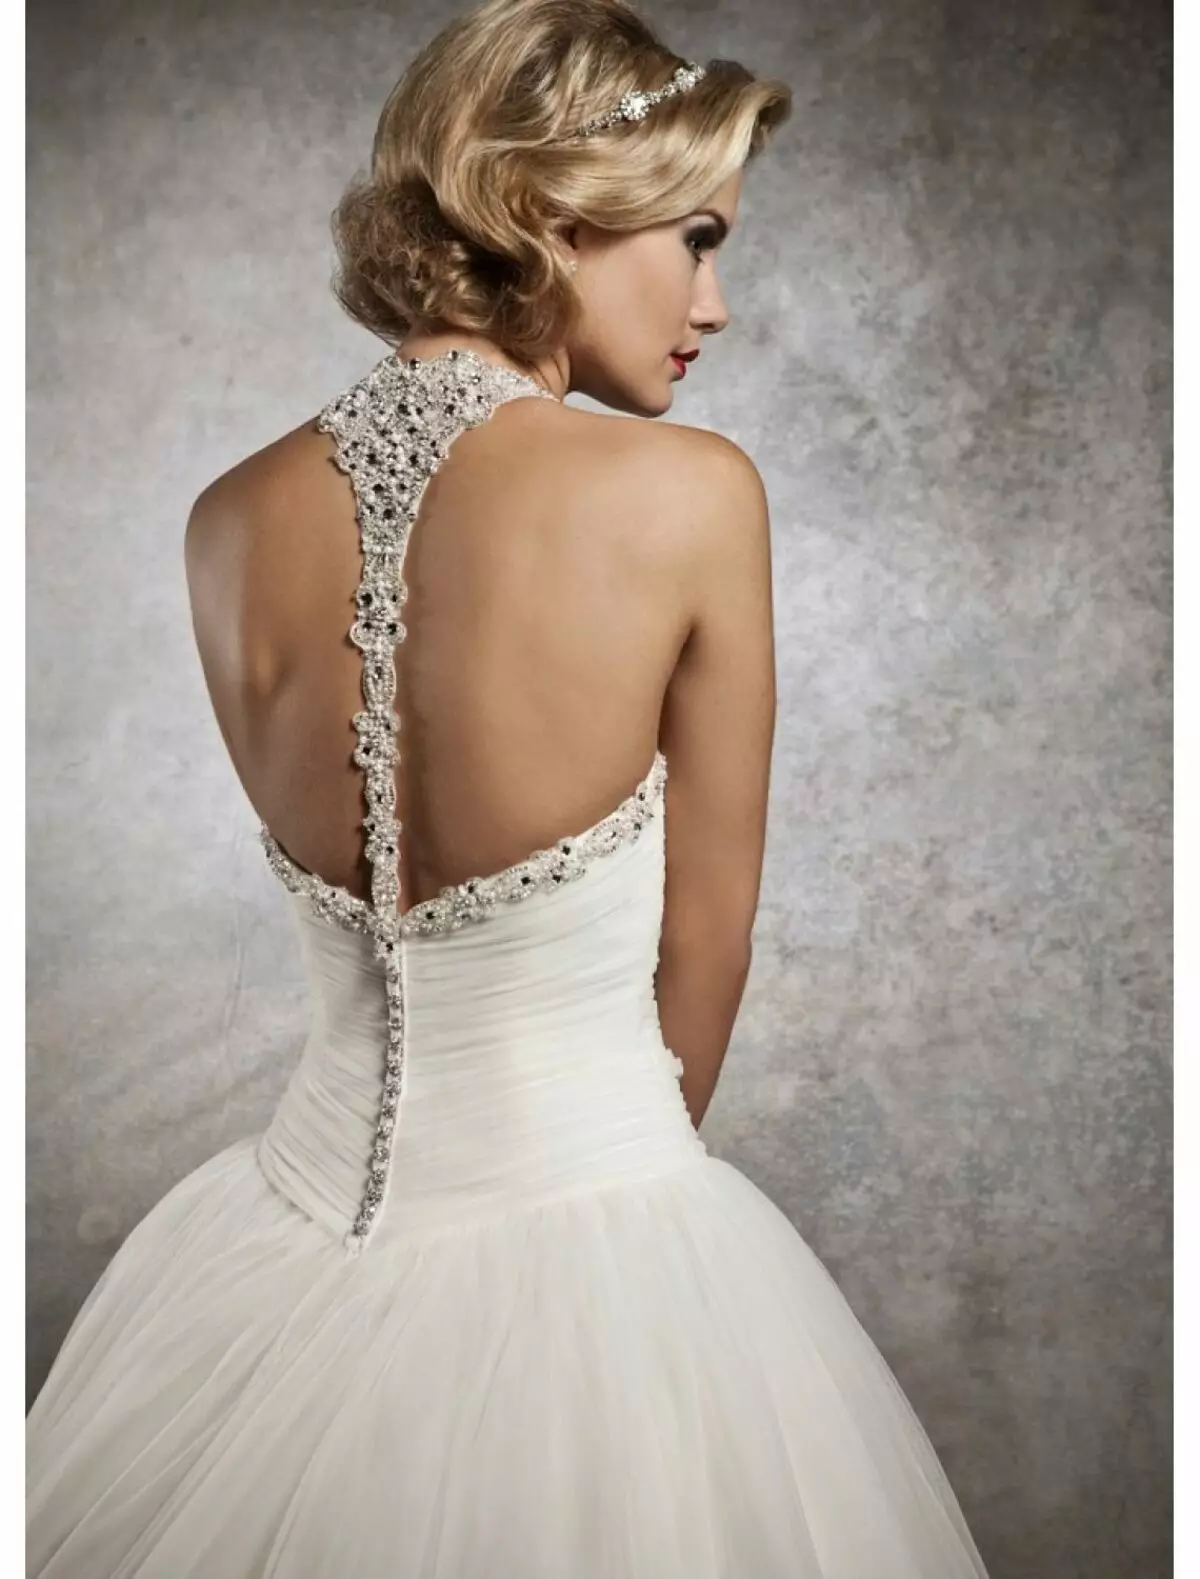 שמלת חתונה עם רצועות על הצוואר והגב פתוח